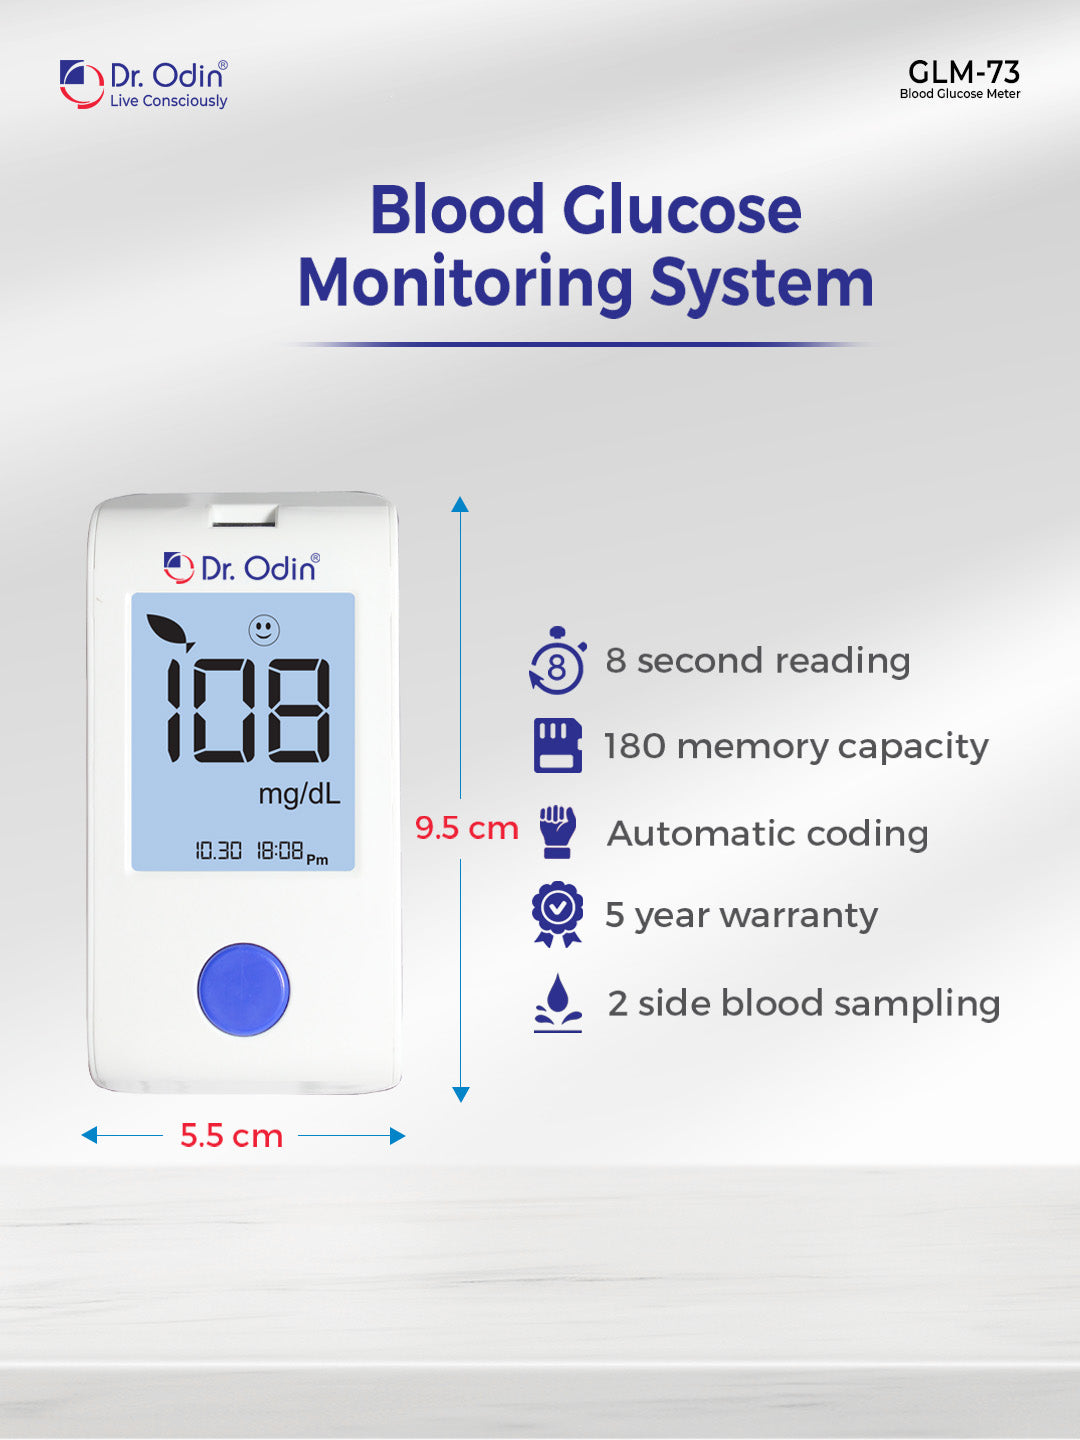 Blood Glucose GOD Meter Only - GLM-73